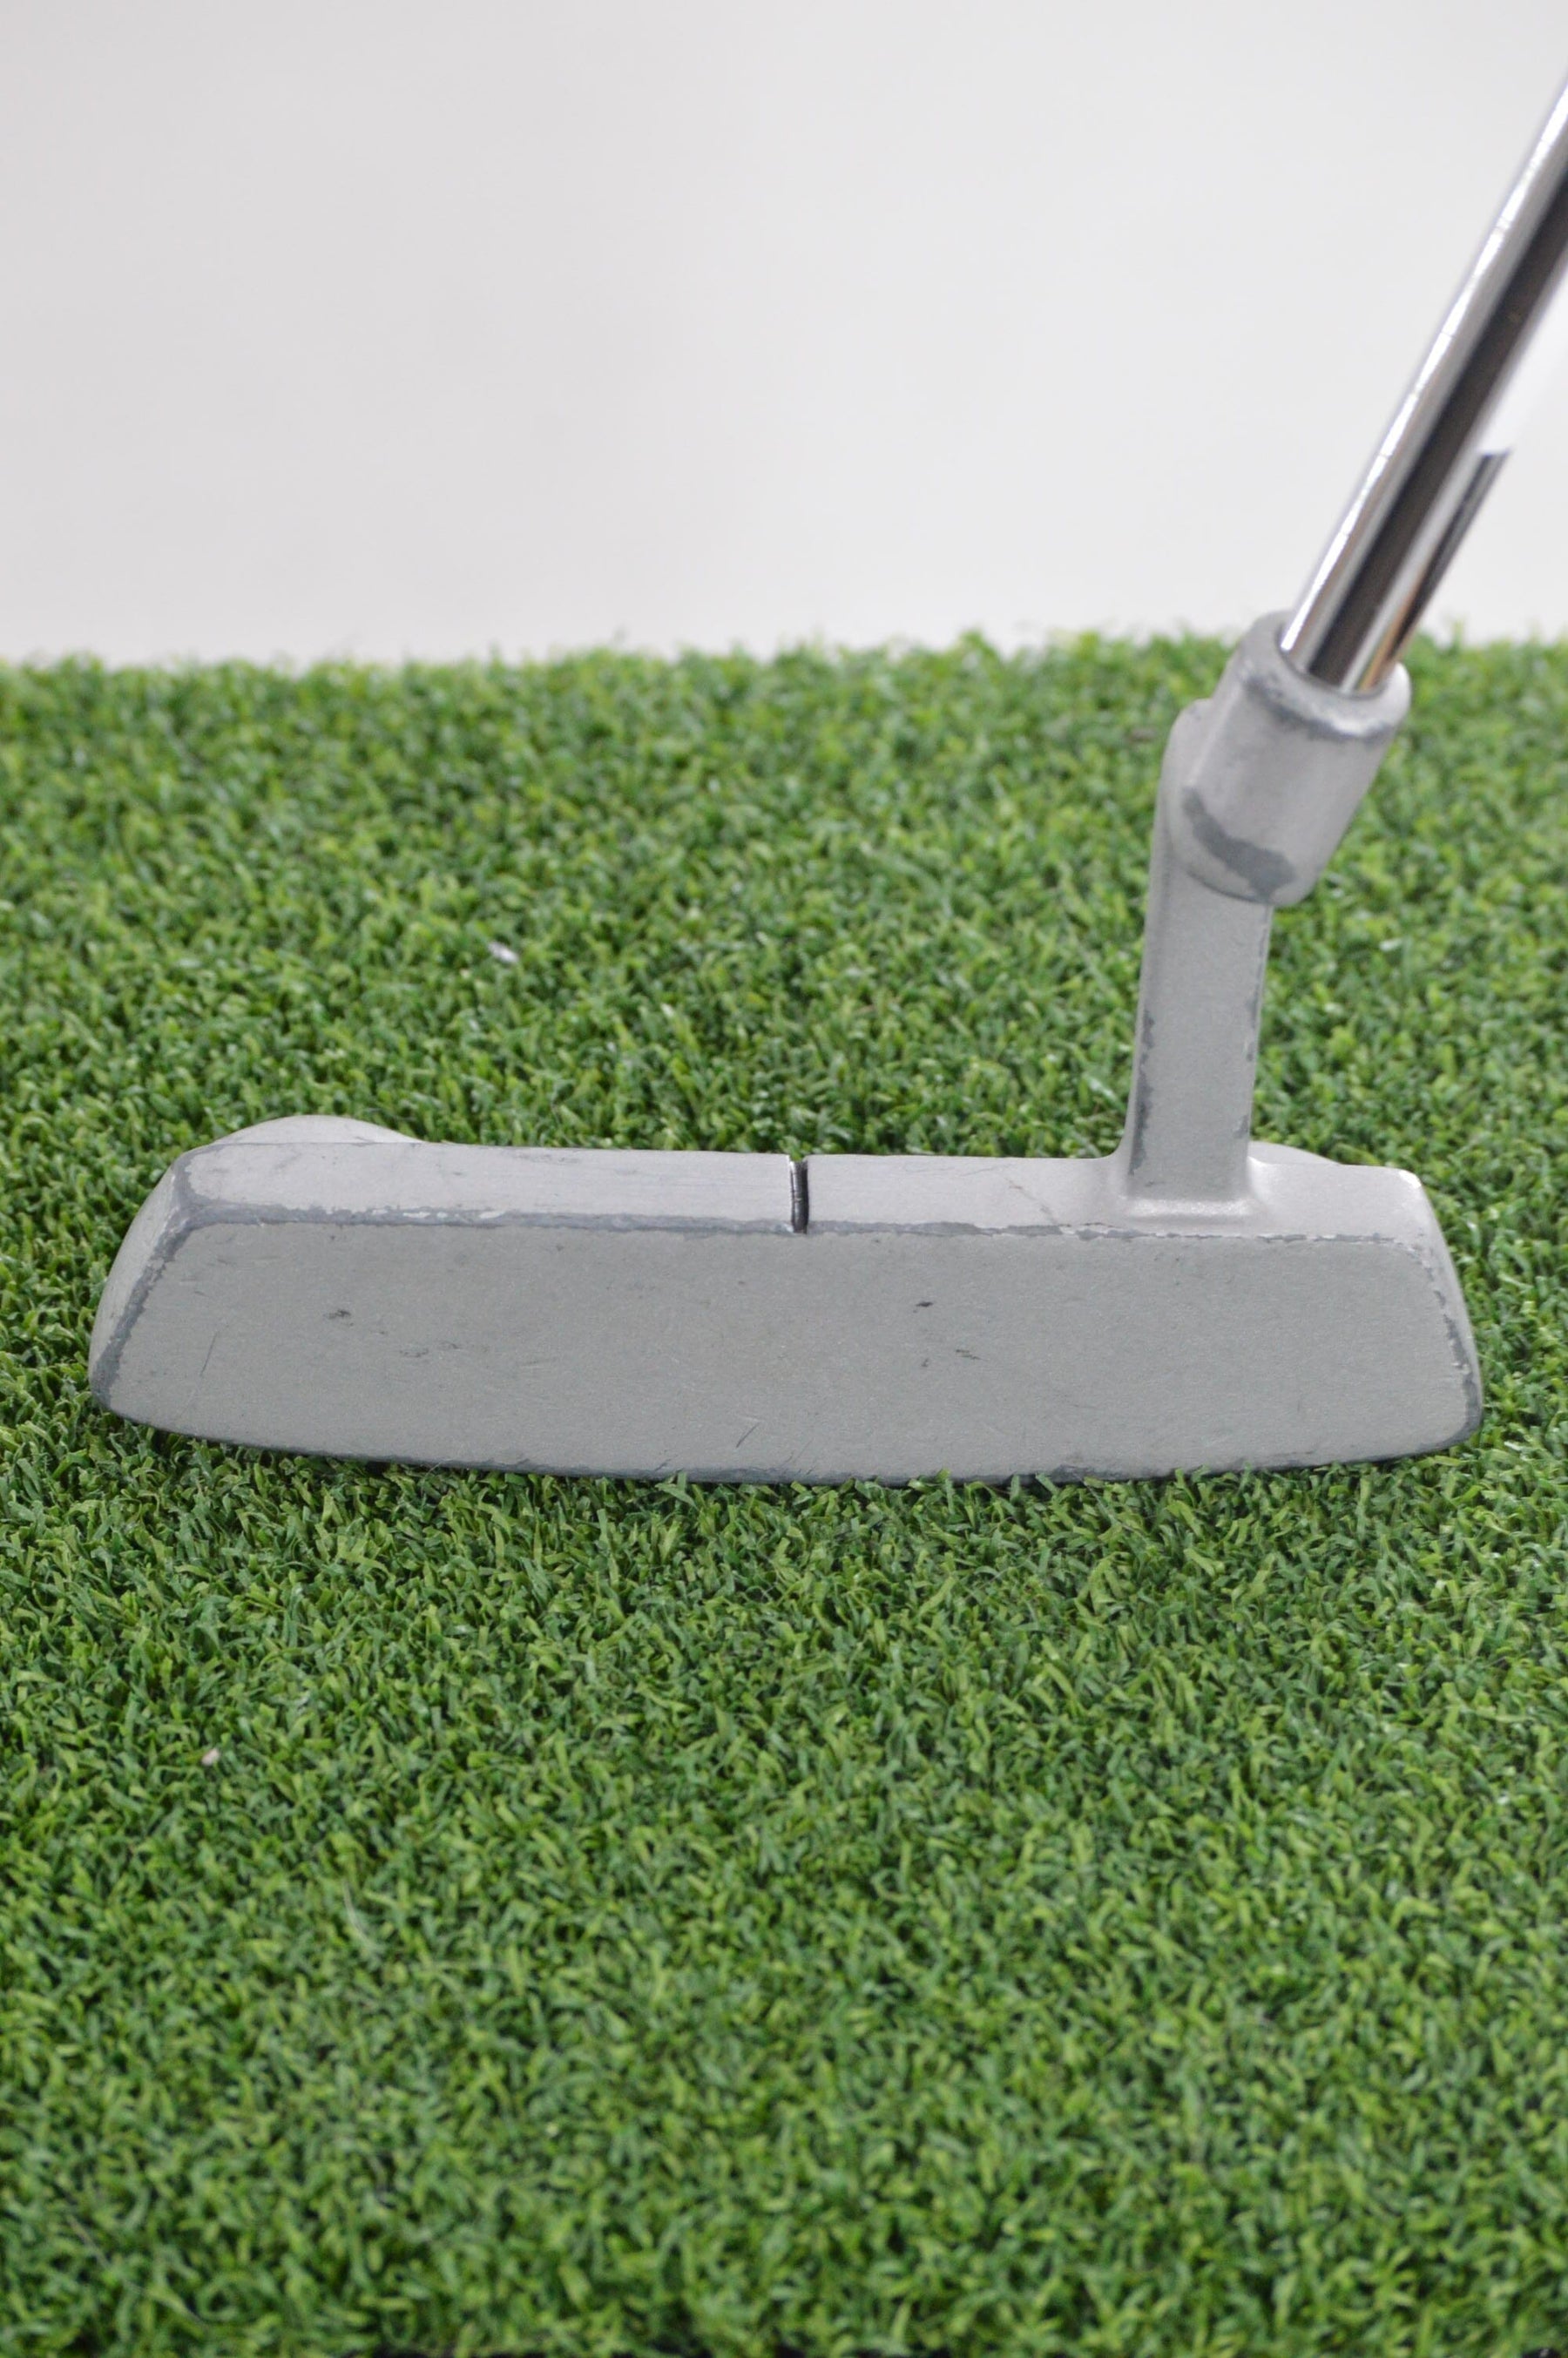 Wilson Green Machine 1 Putter 34.25" Golf Clubs GolfRoots 